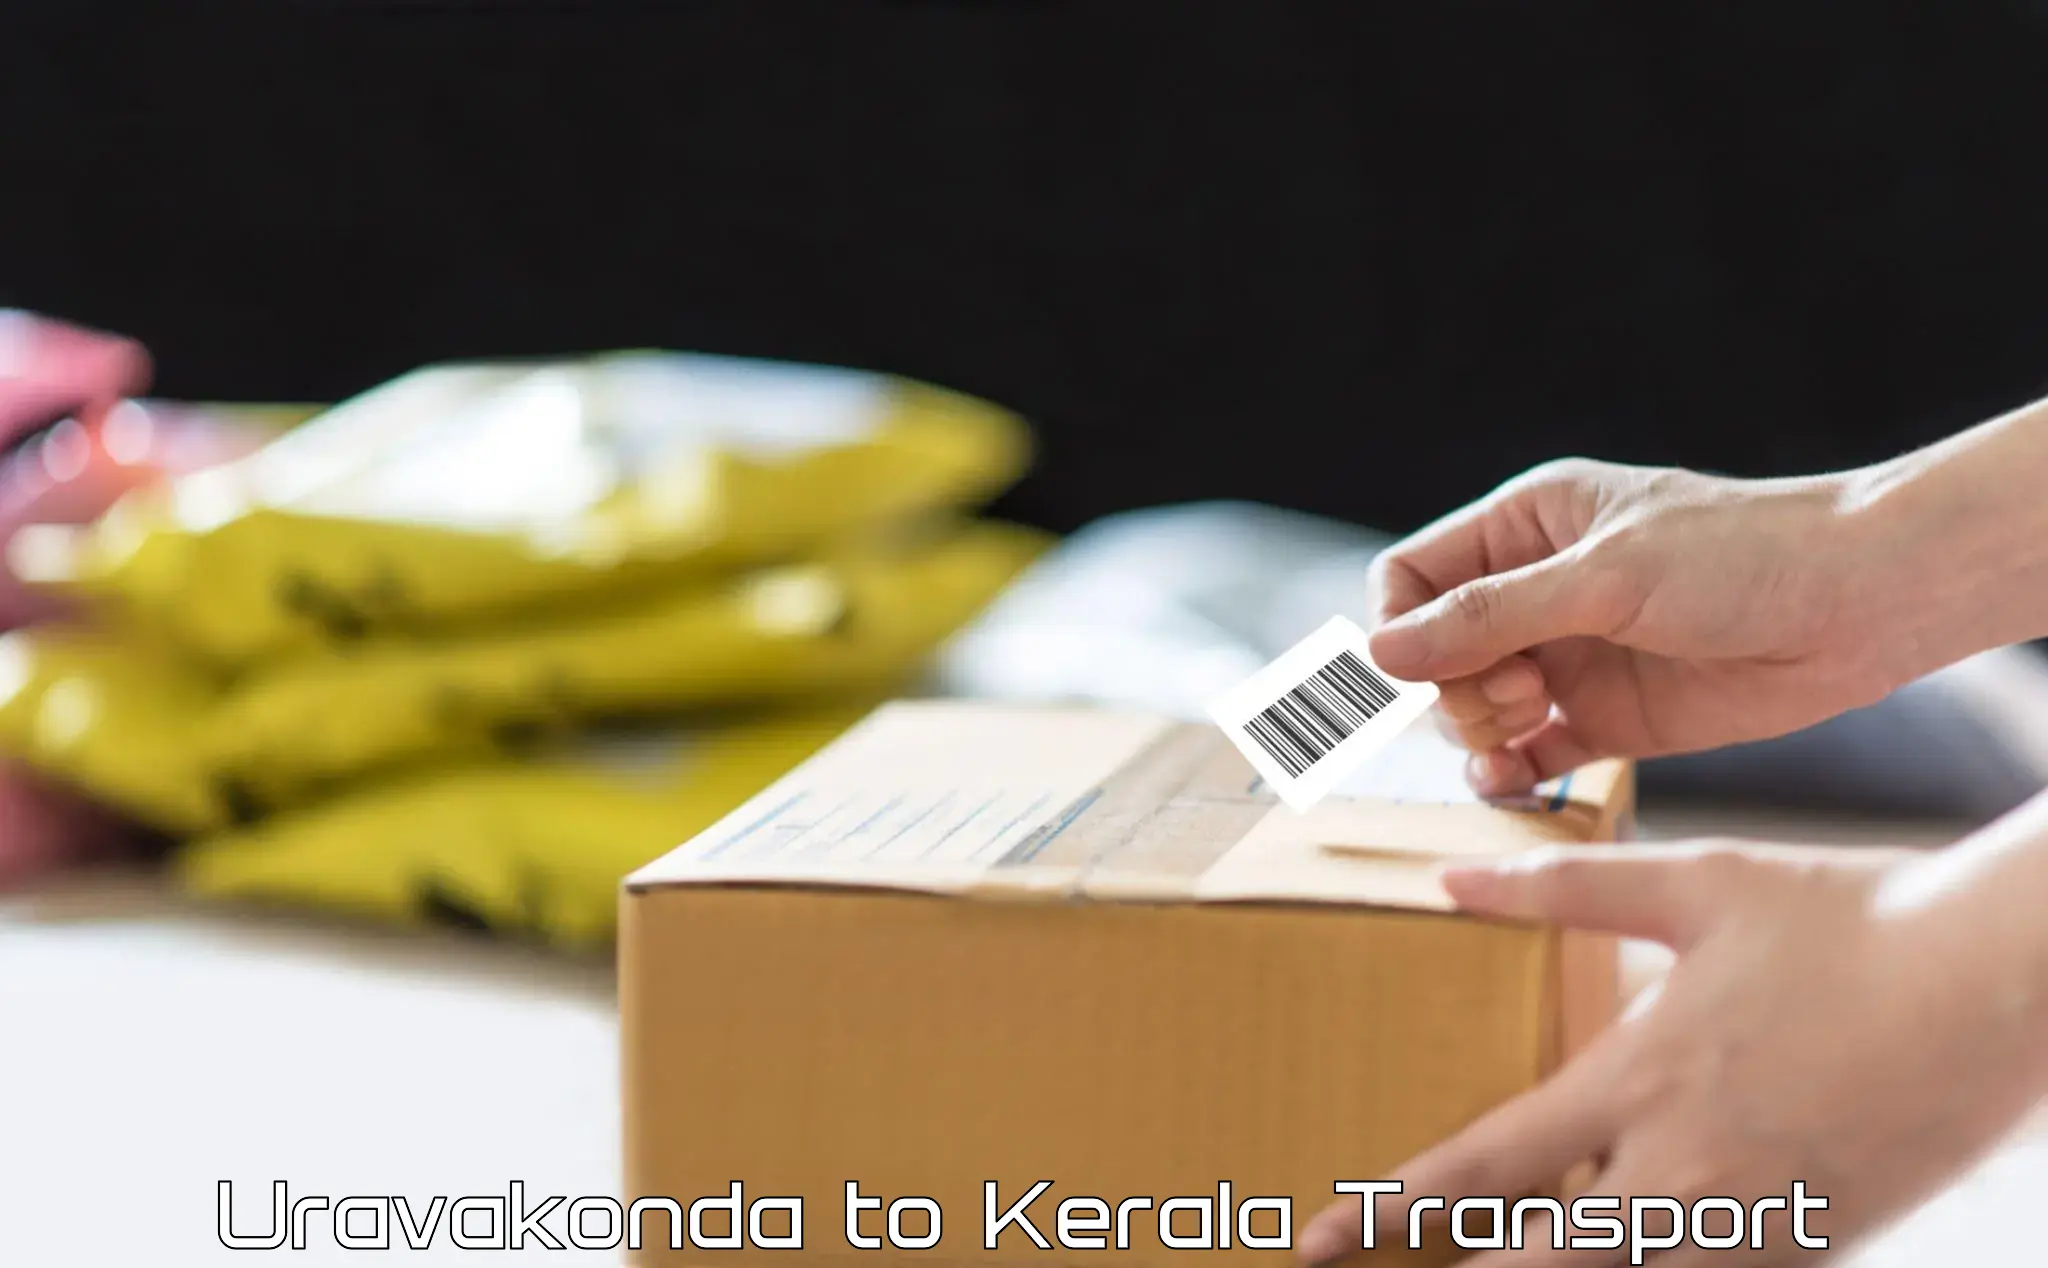 Online transport booking Uravakonda to Thiruvananthapuram